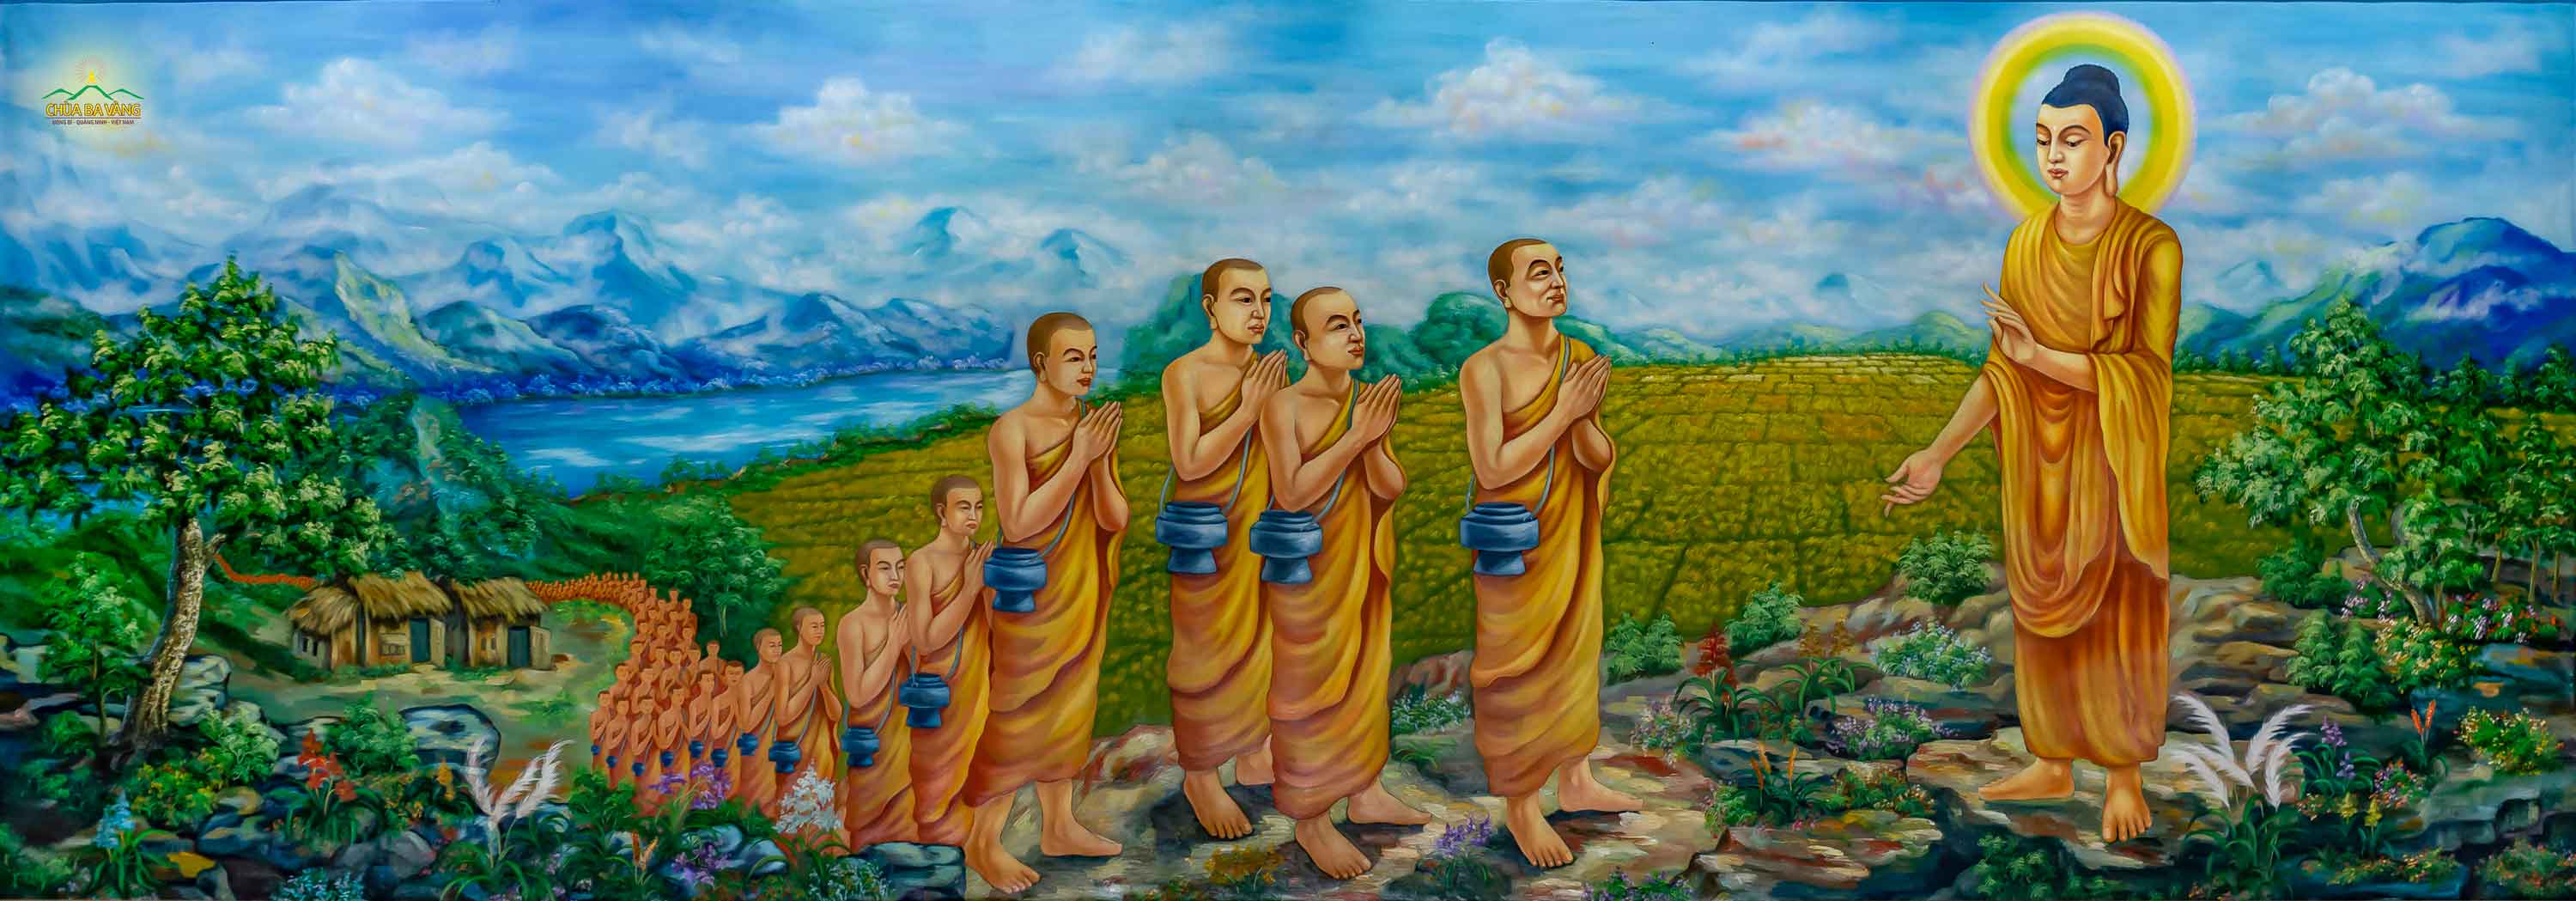 Đức Phật và Tăng đoàn ôm bình bát đi vào làng mạc để khất thực (ảnh minh họa)